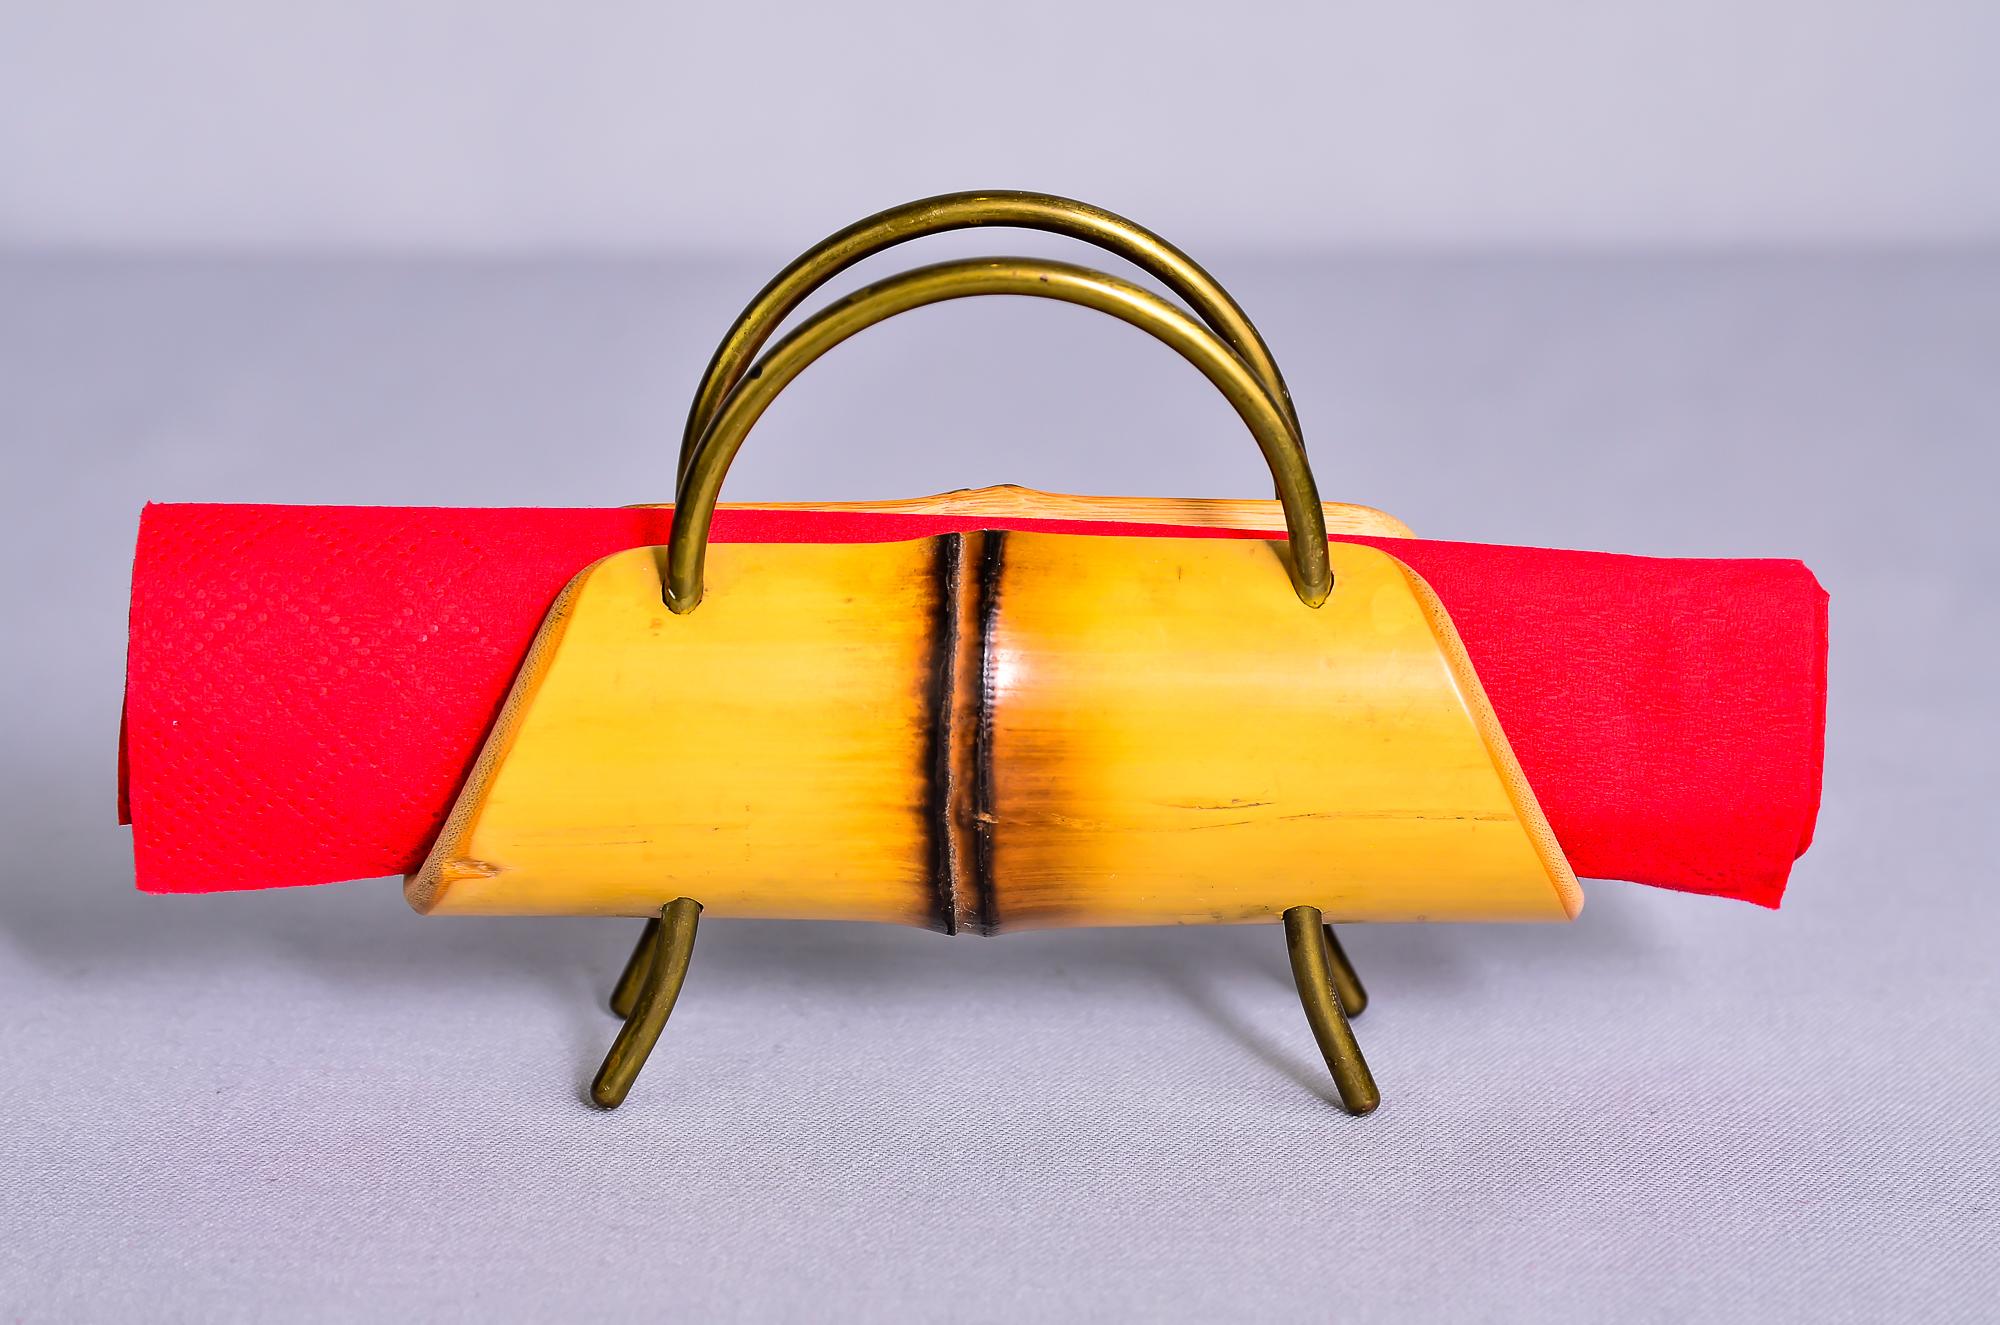 Bamboo napkin holder, circa 1950s
Original condition.